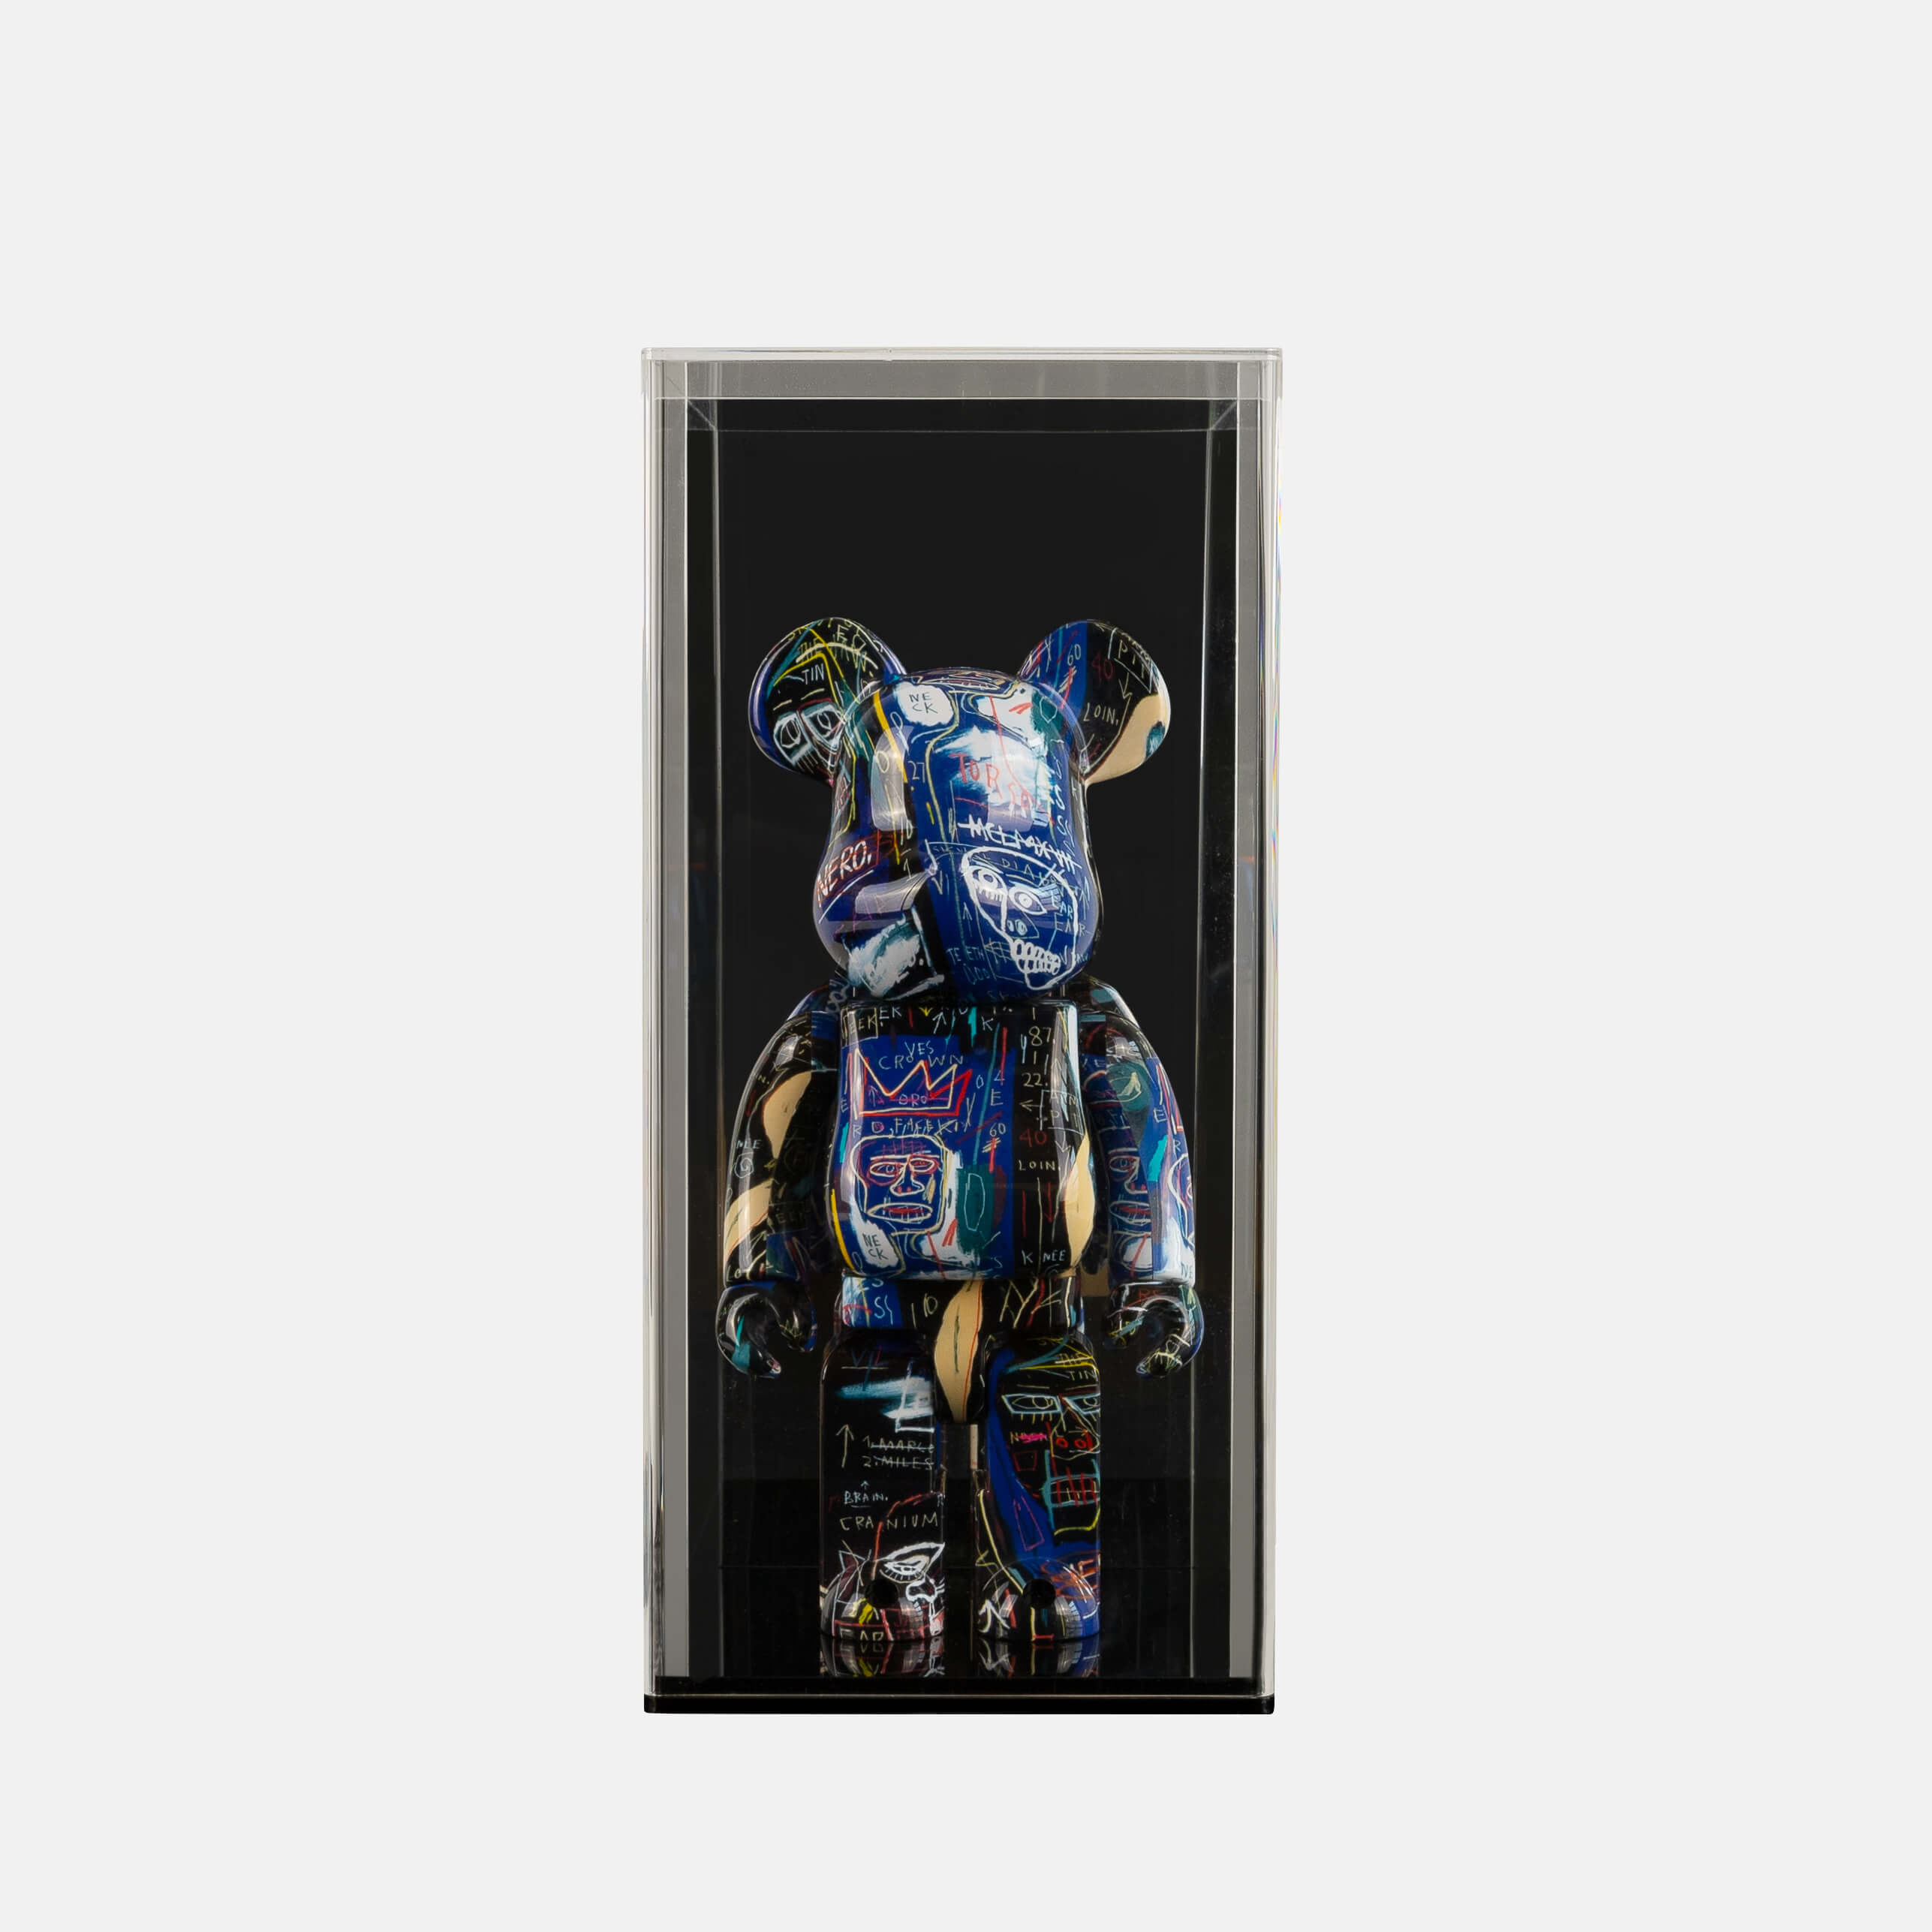 Looksee Designs - Le Jouet Figure Display Case - Bear Brick Display - Toy Figure Display - Kaws Figure